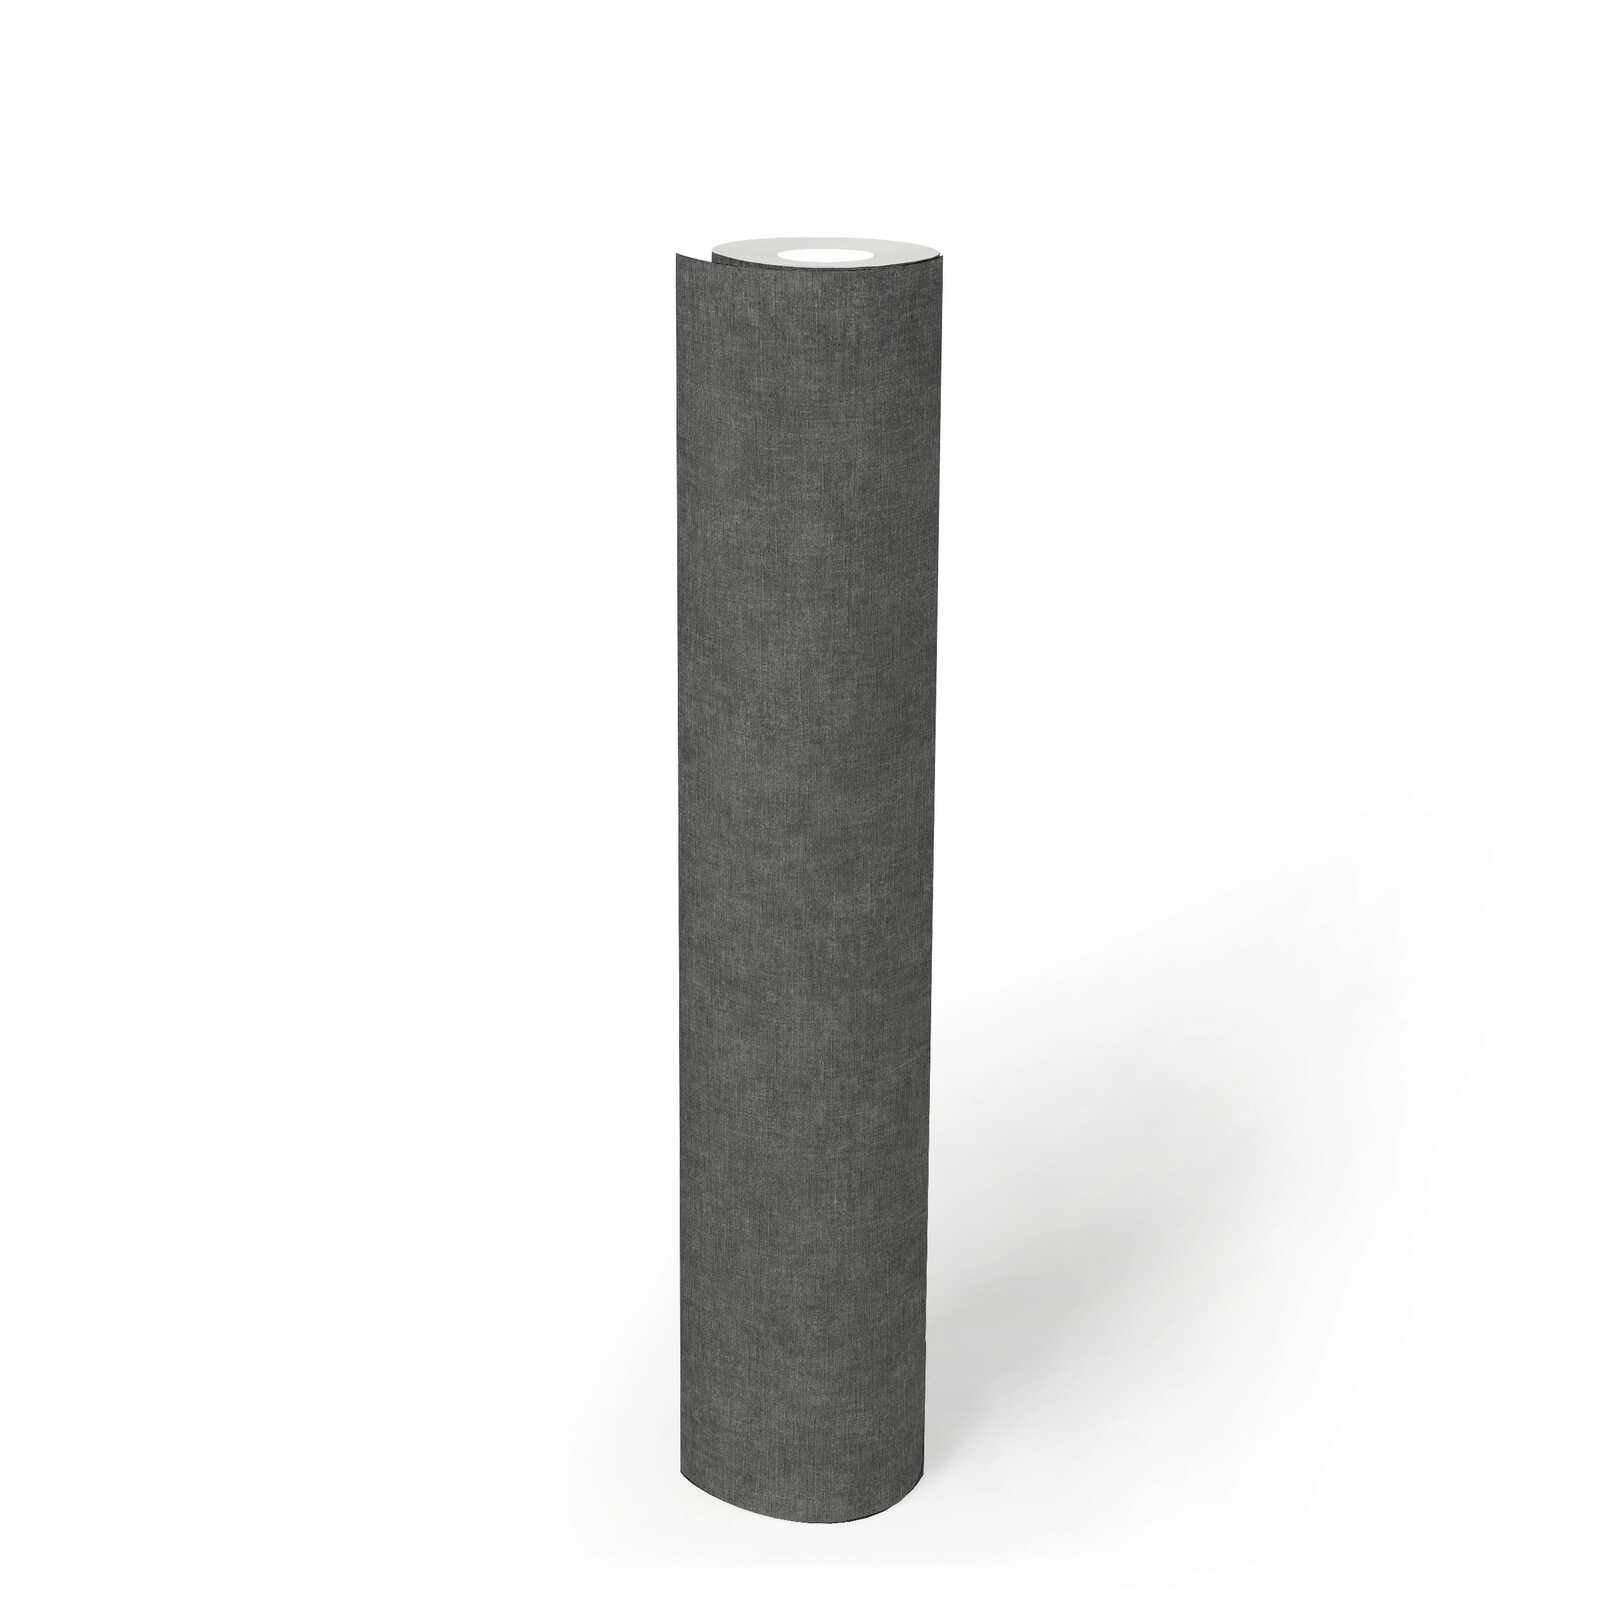             Effen vliesbehang in gipslook - zwart, grijs
        